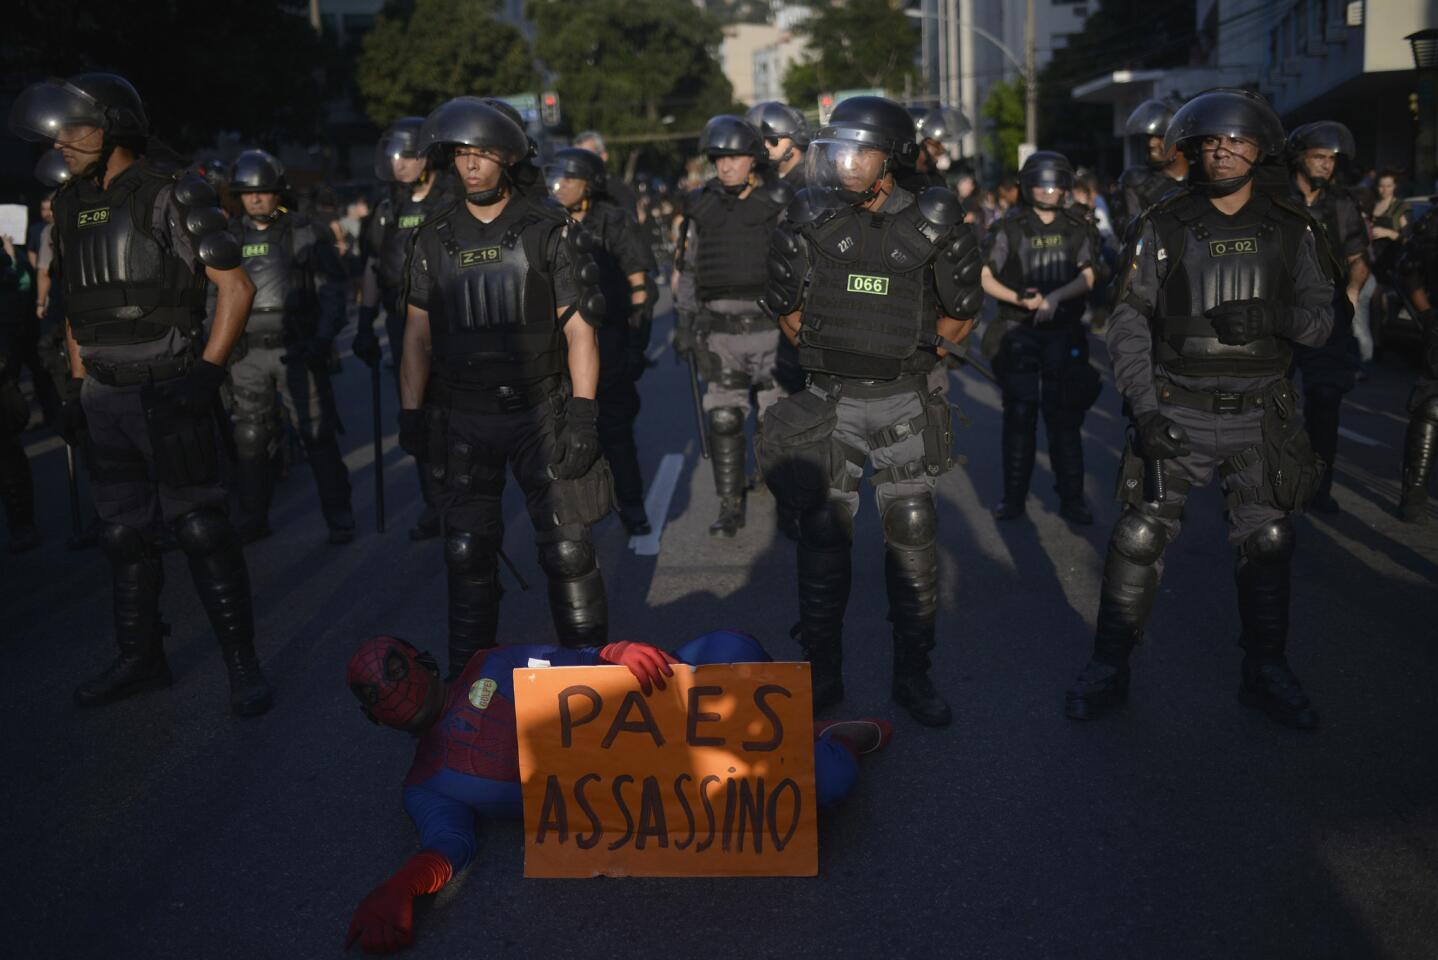 Río 2016: Protestas en inauguración